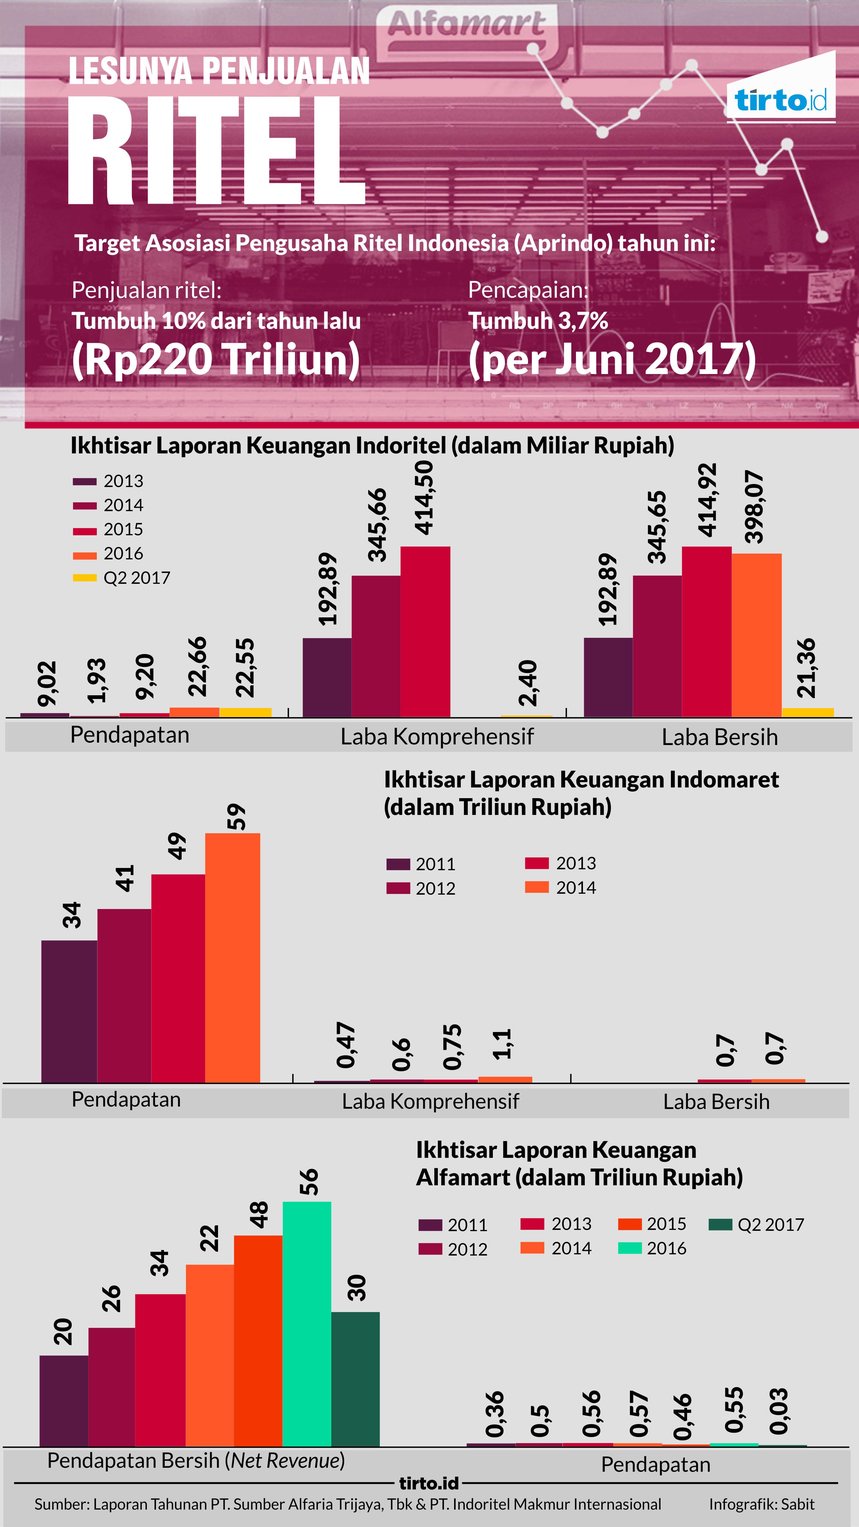 Infografik Lesunya penjualan Ritel